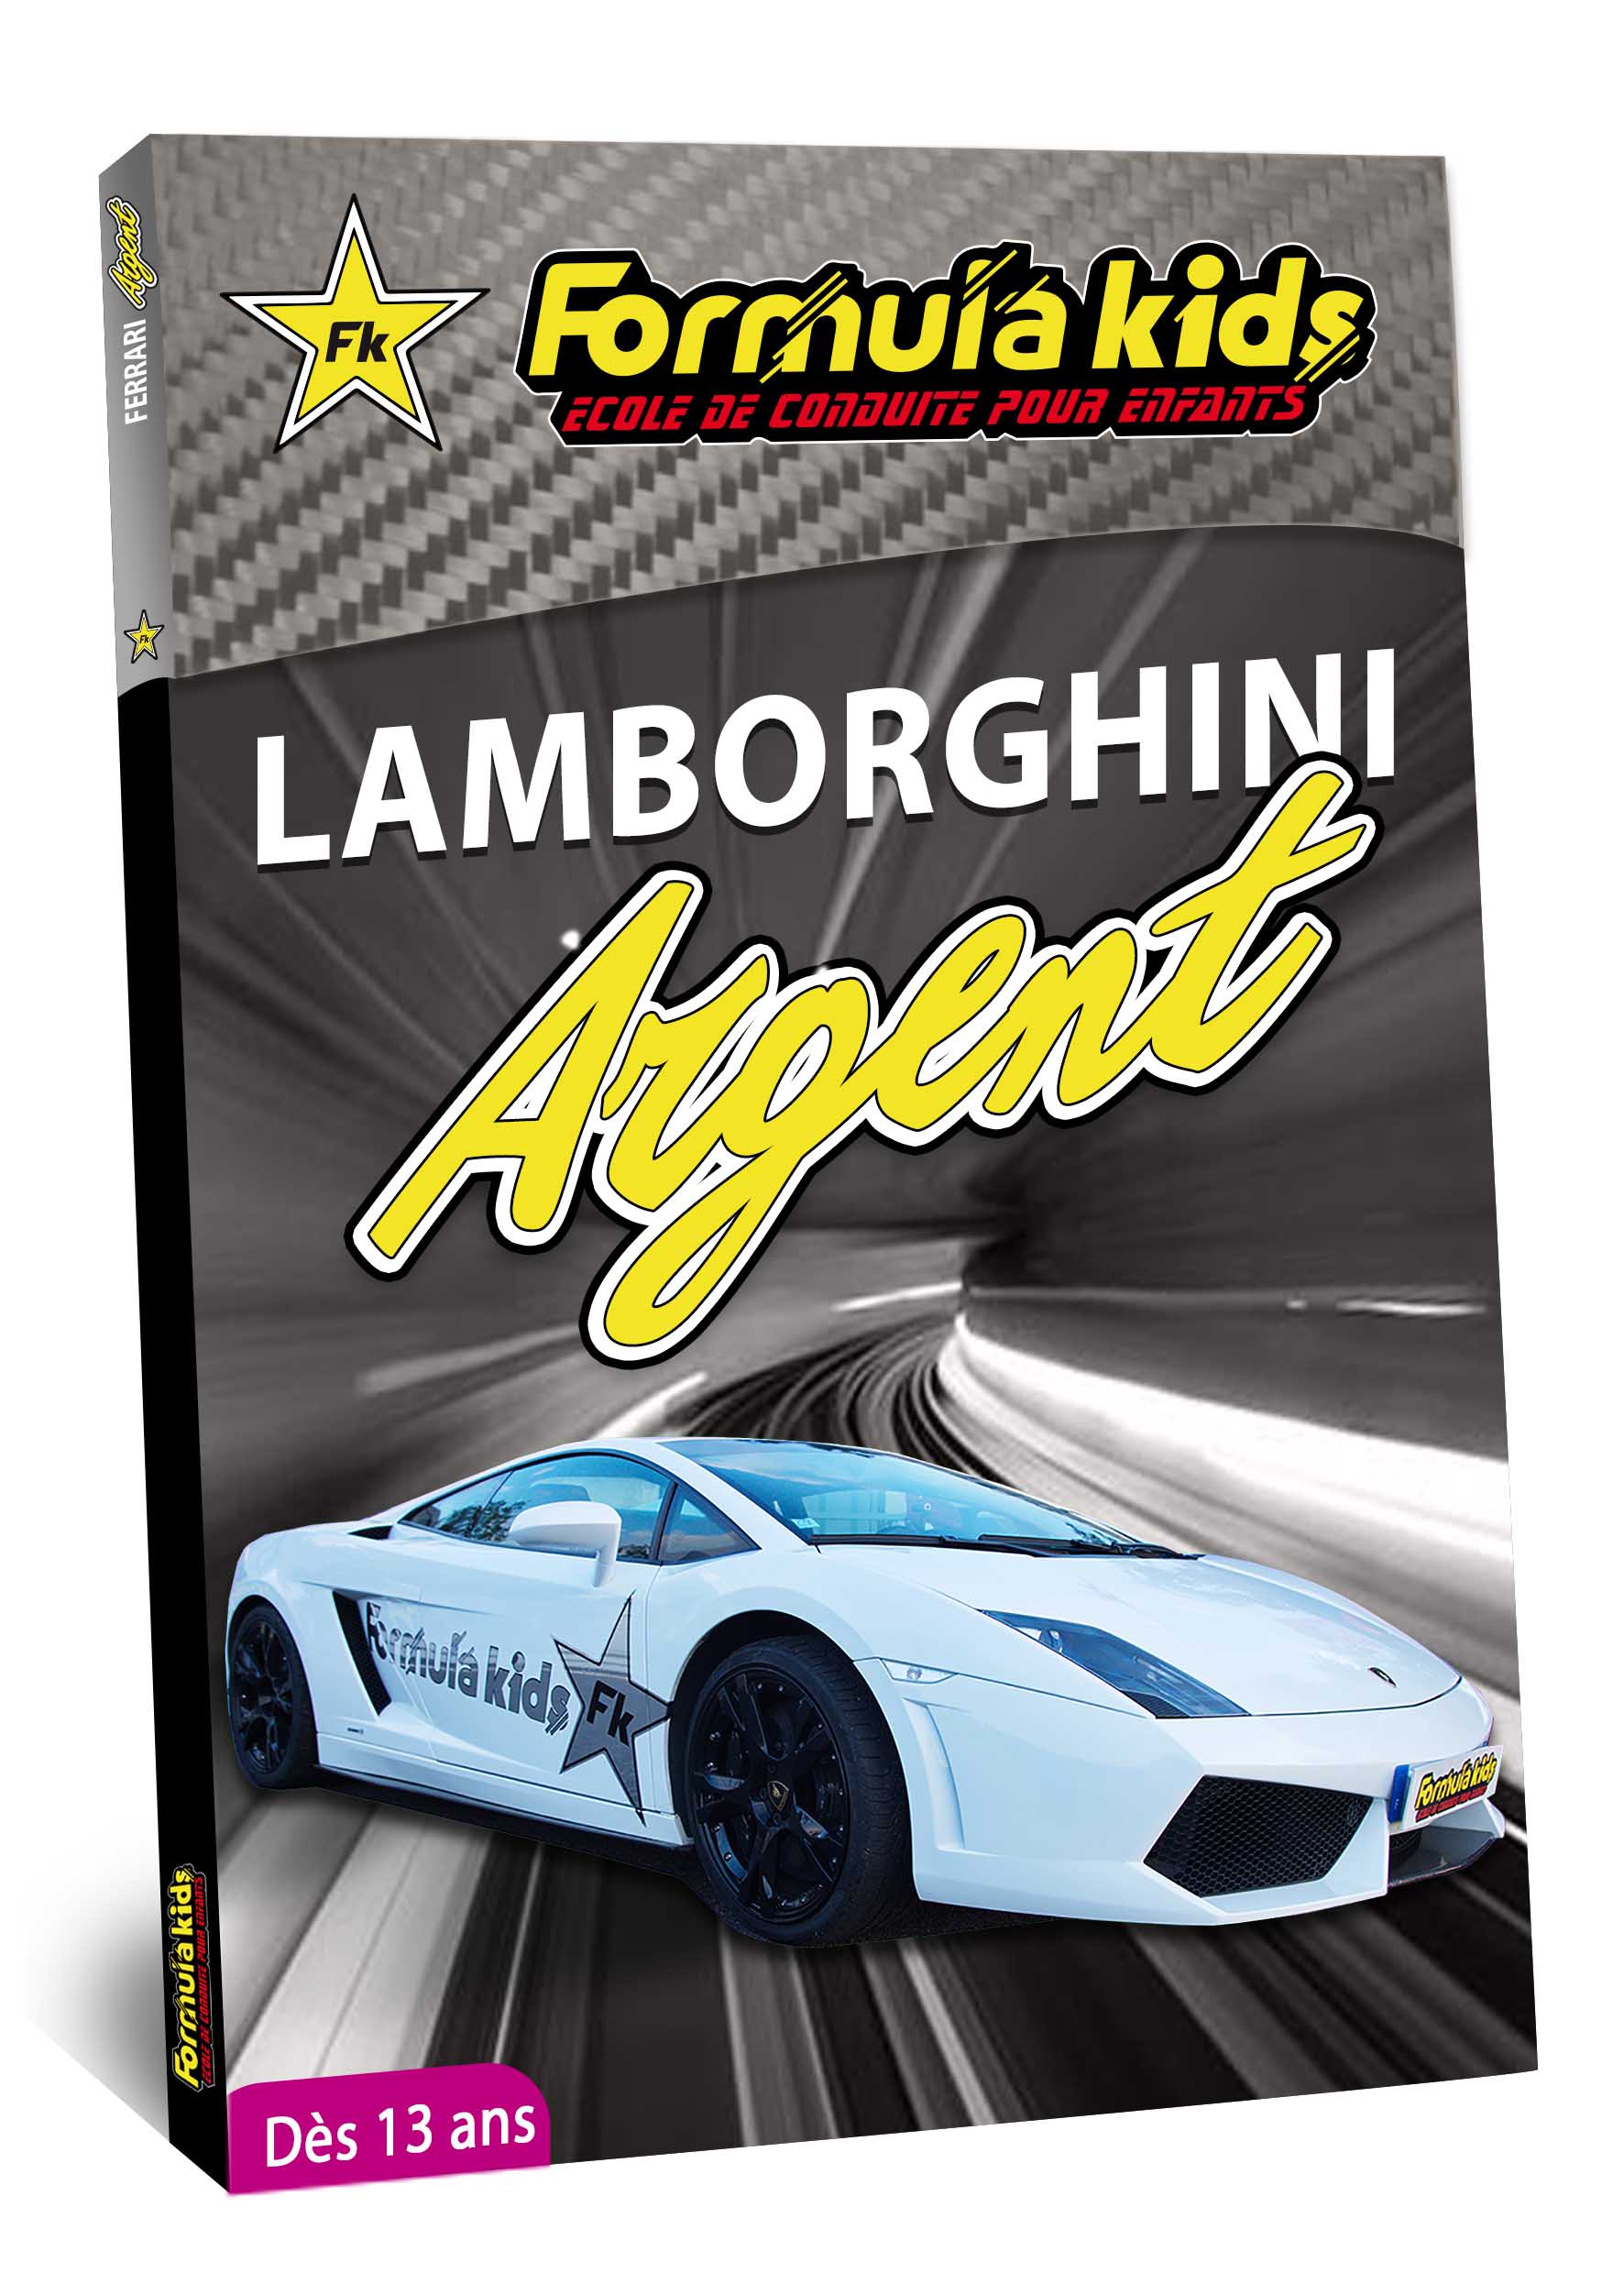 Lamborghini Argent - Conduire une Lamborghini dès 7 ans - Formula Kids - Stage de conduite enfant - Stage de pilotage sur As'Phalte - Stage Junior - Gallardo LP 560 - Cadeau - Idée anniversaire - Smart Box - Idée Cadeau - Loisir - Famille